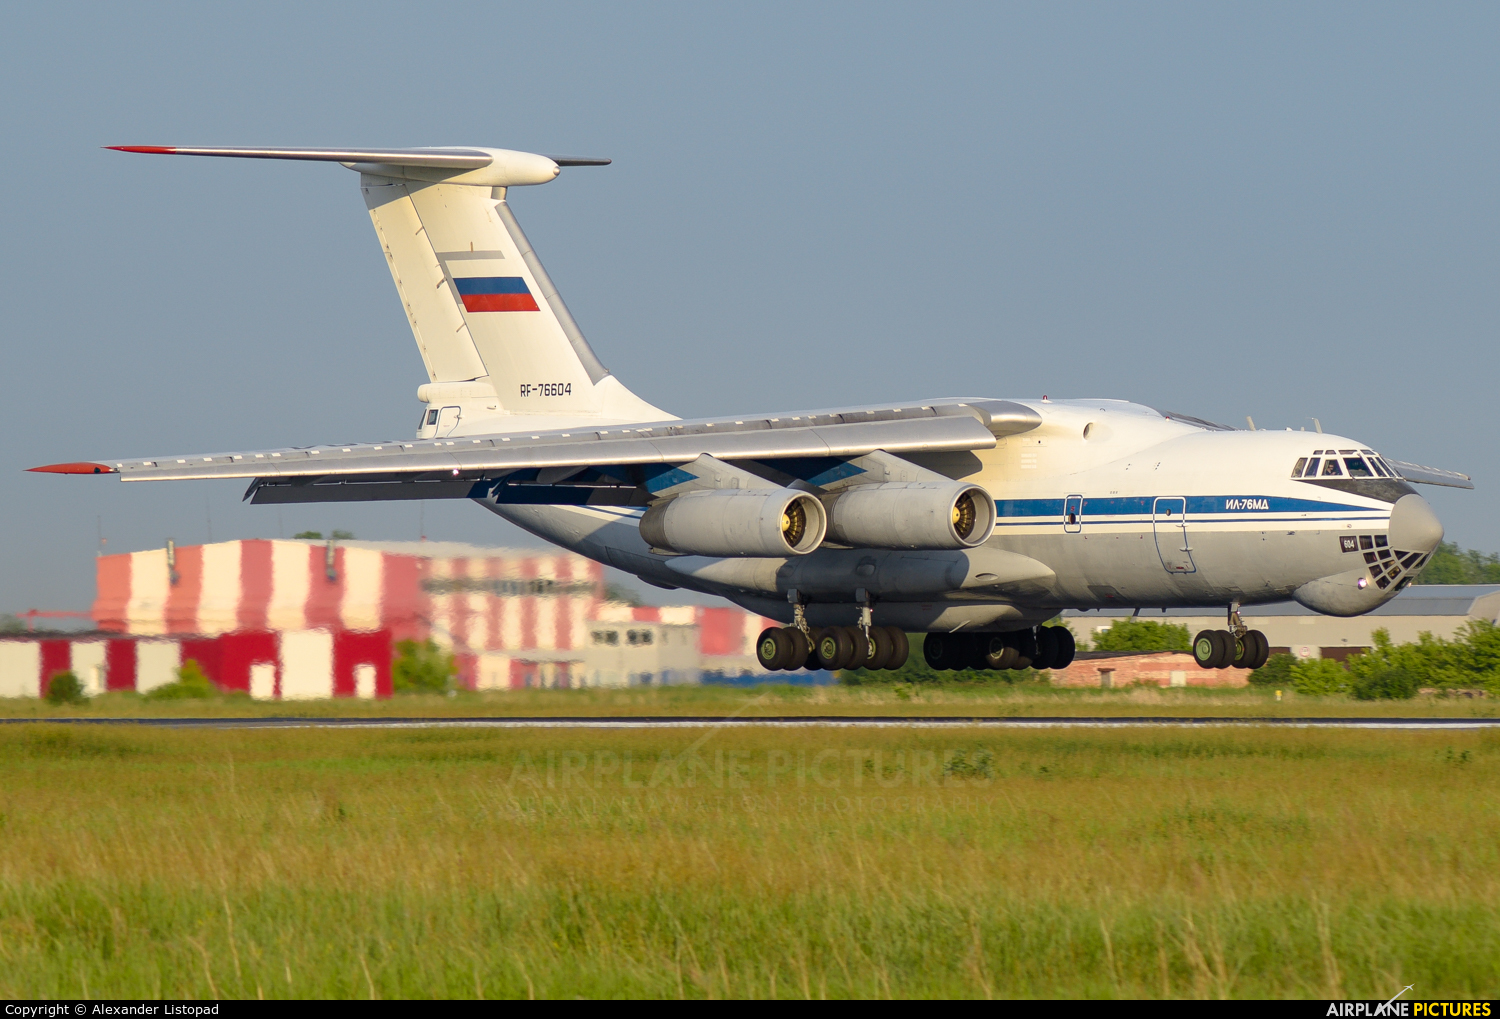 Russia - Air Force RF-76604 aircraft at Novosibirsk